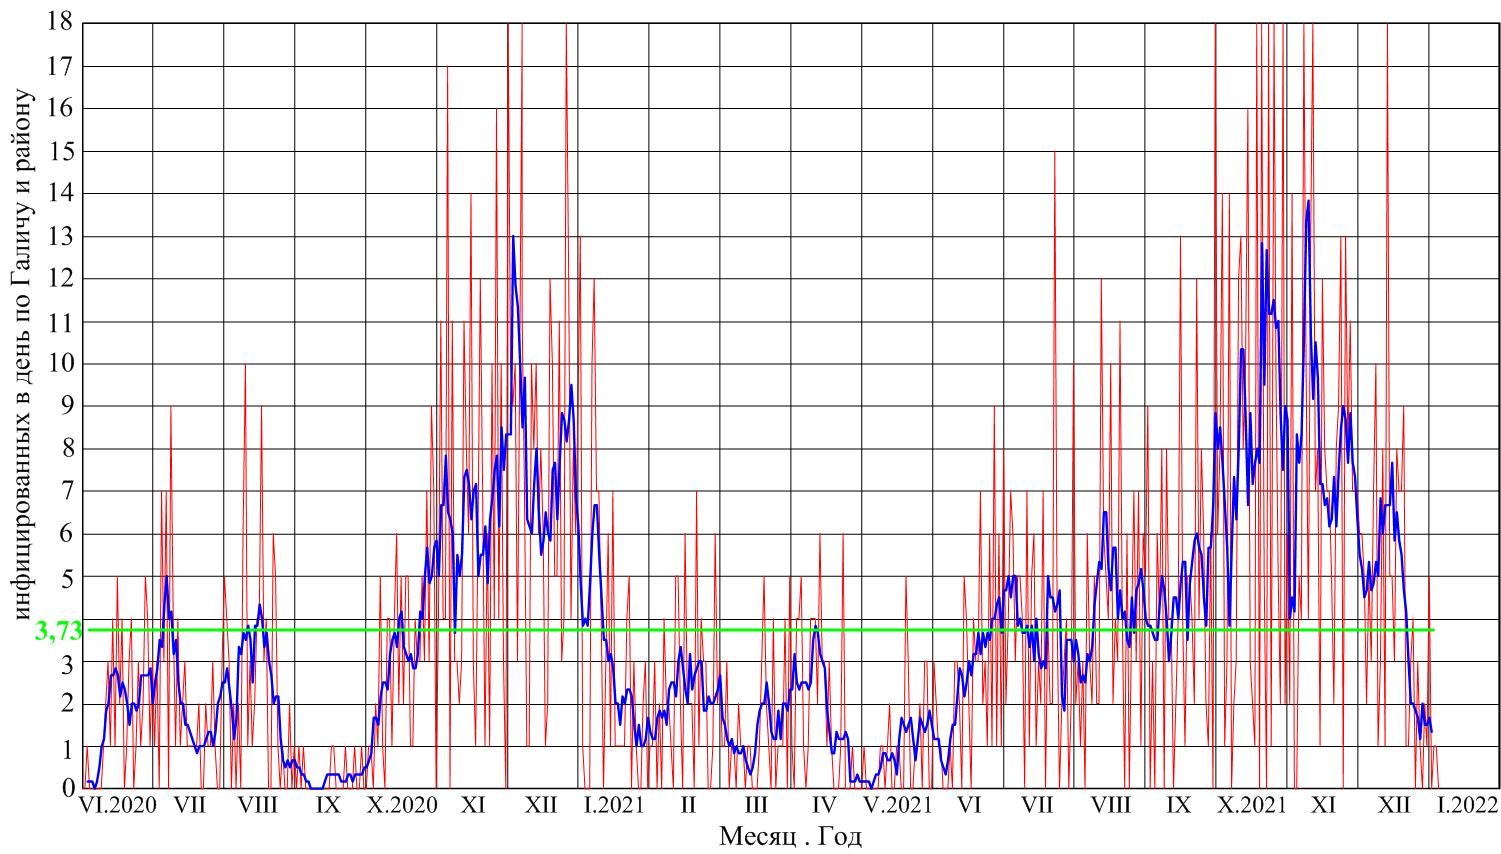 красной тонкой линией показано количество инфицированных в день, синей линией - то же с усреднением за неделю, так называемое скользящее среднее, зеленой линией - среднее количество инфицированных в день за все время активной эпидемии